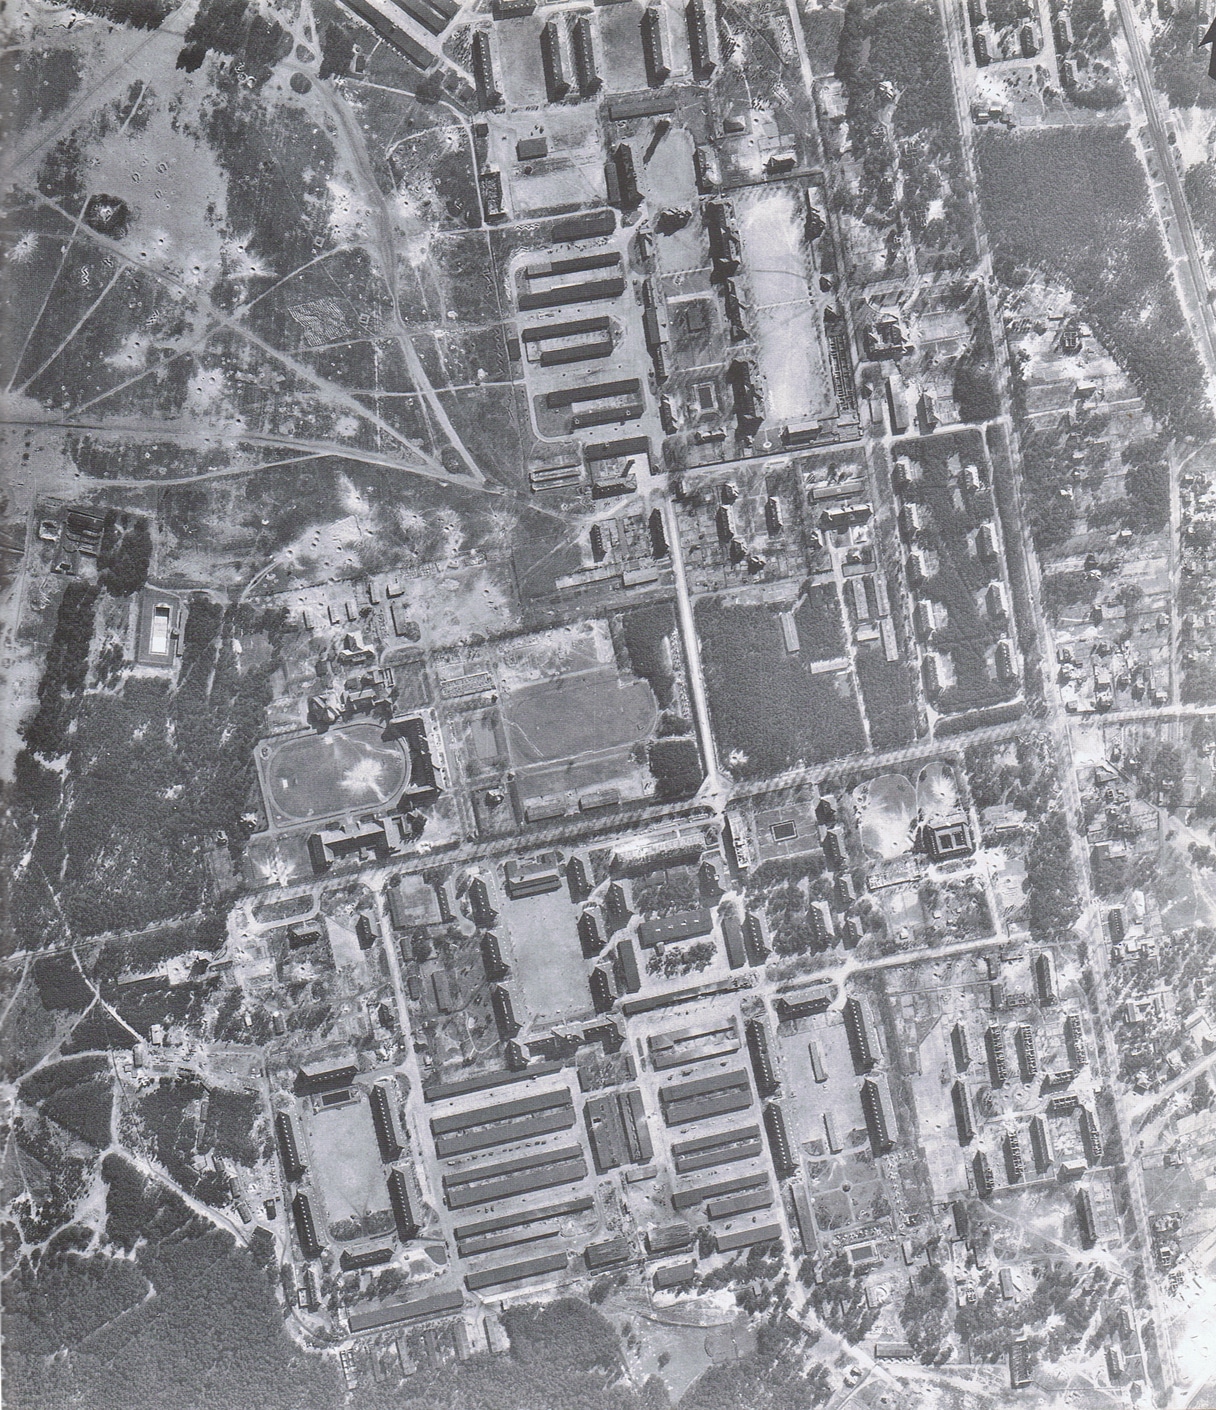 Cuartel general del Heer y zona de formación militar de Zossen el 22 de marzo de 1945